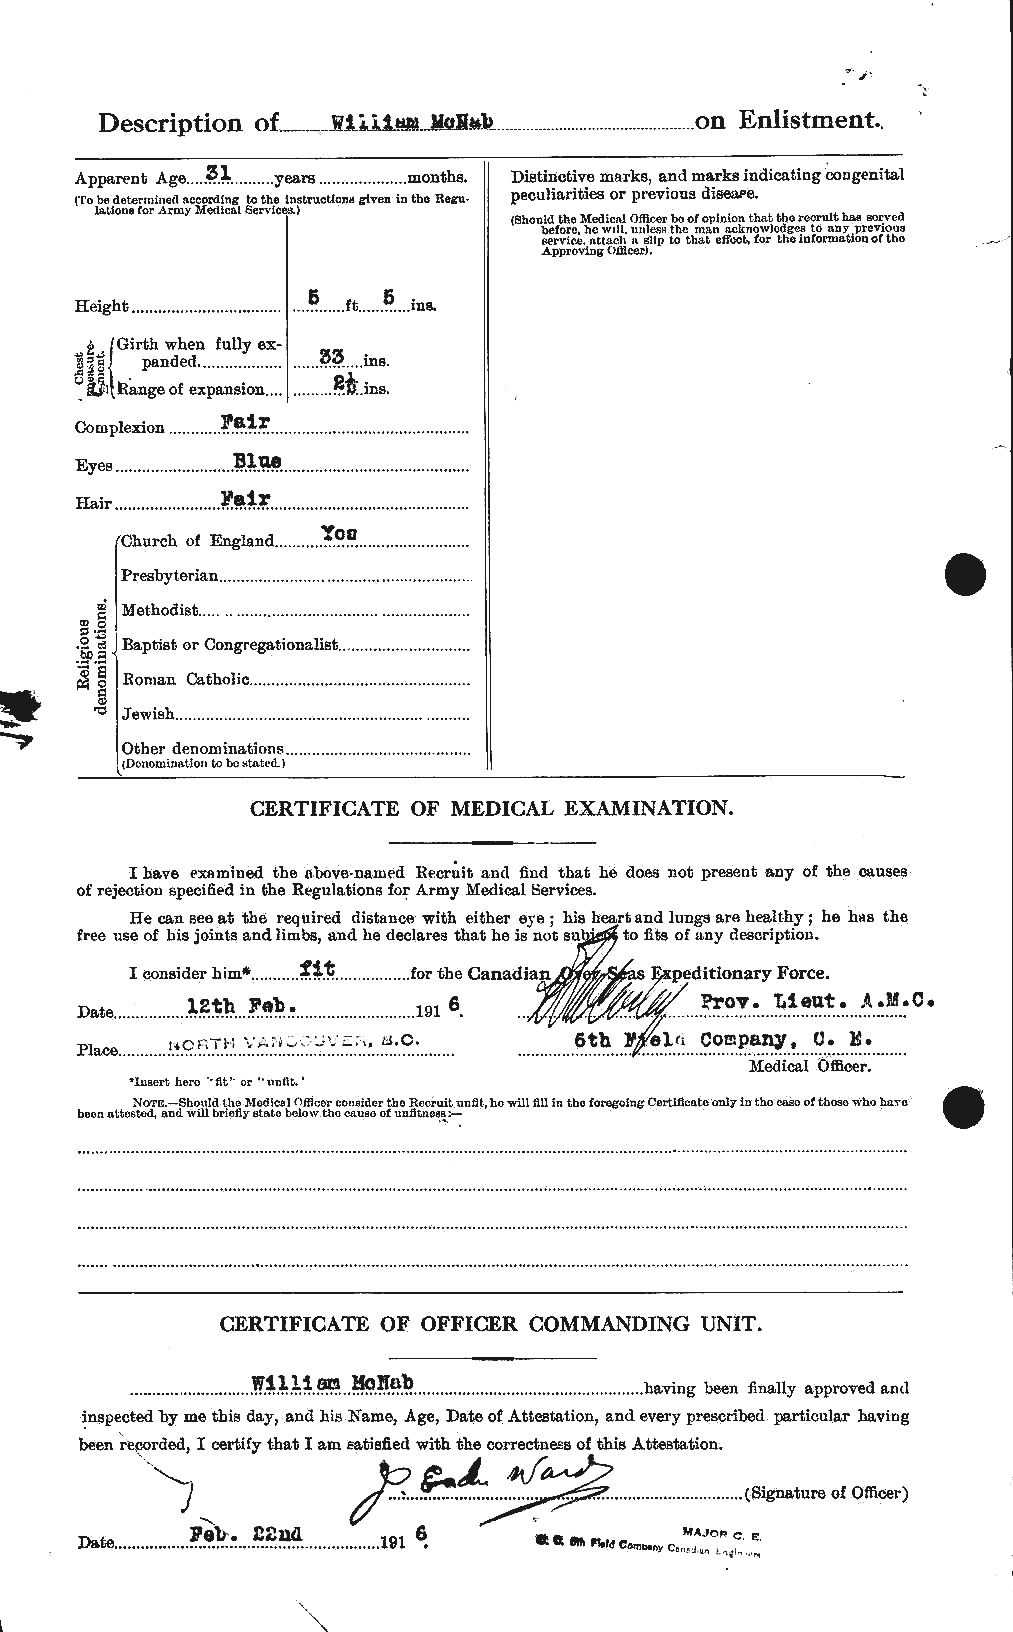 Dossiers du Personnel de la Première Guerre mondiale - CEC 536283b